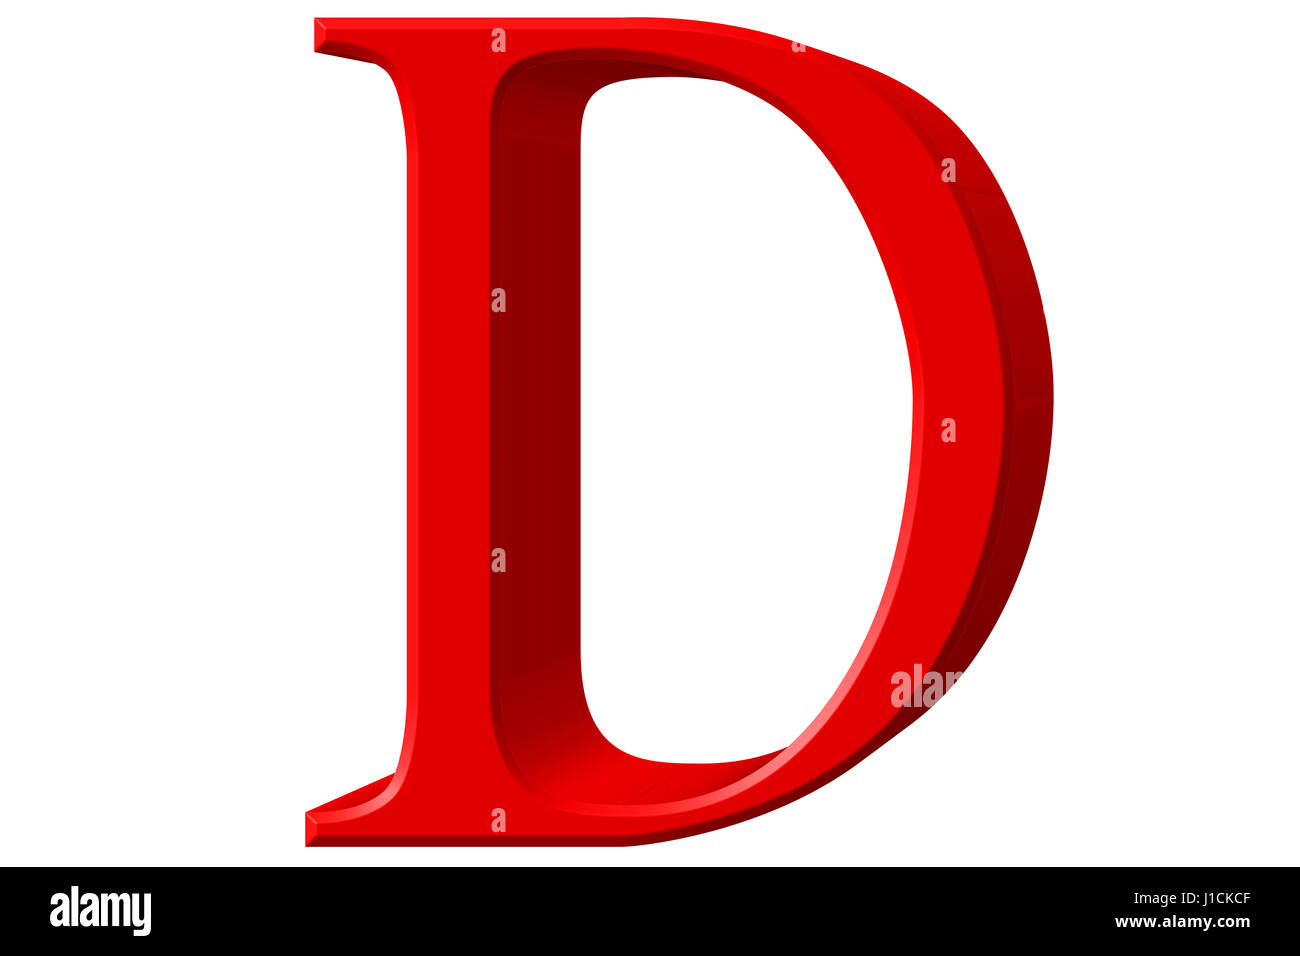 https://c8.alamy.com/comp/J1CKCF/uppercase-letter-d-isolated-on-white-3d-illustration-J1CKCF.jpg